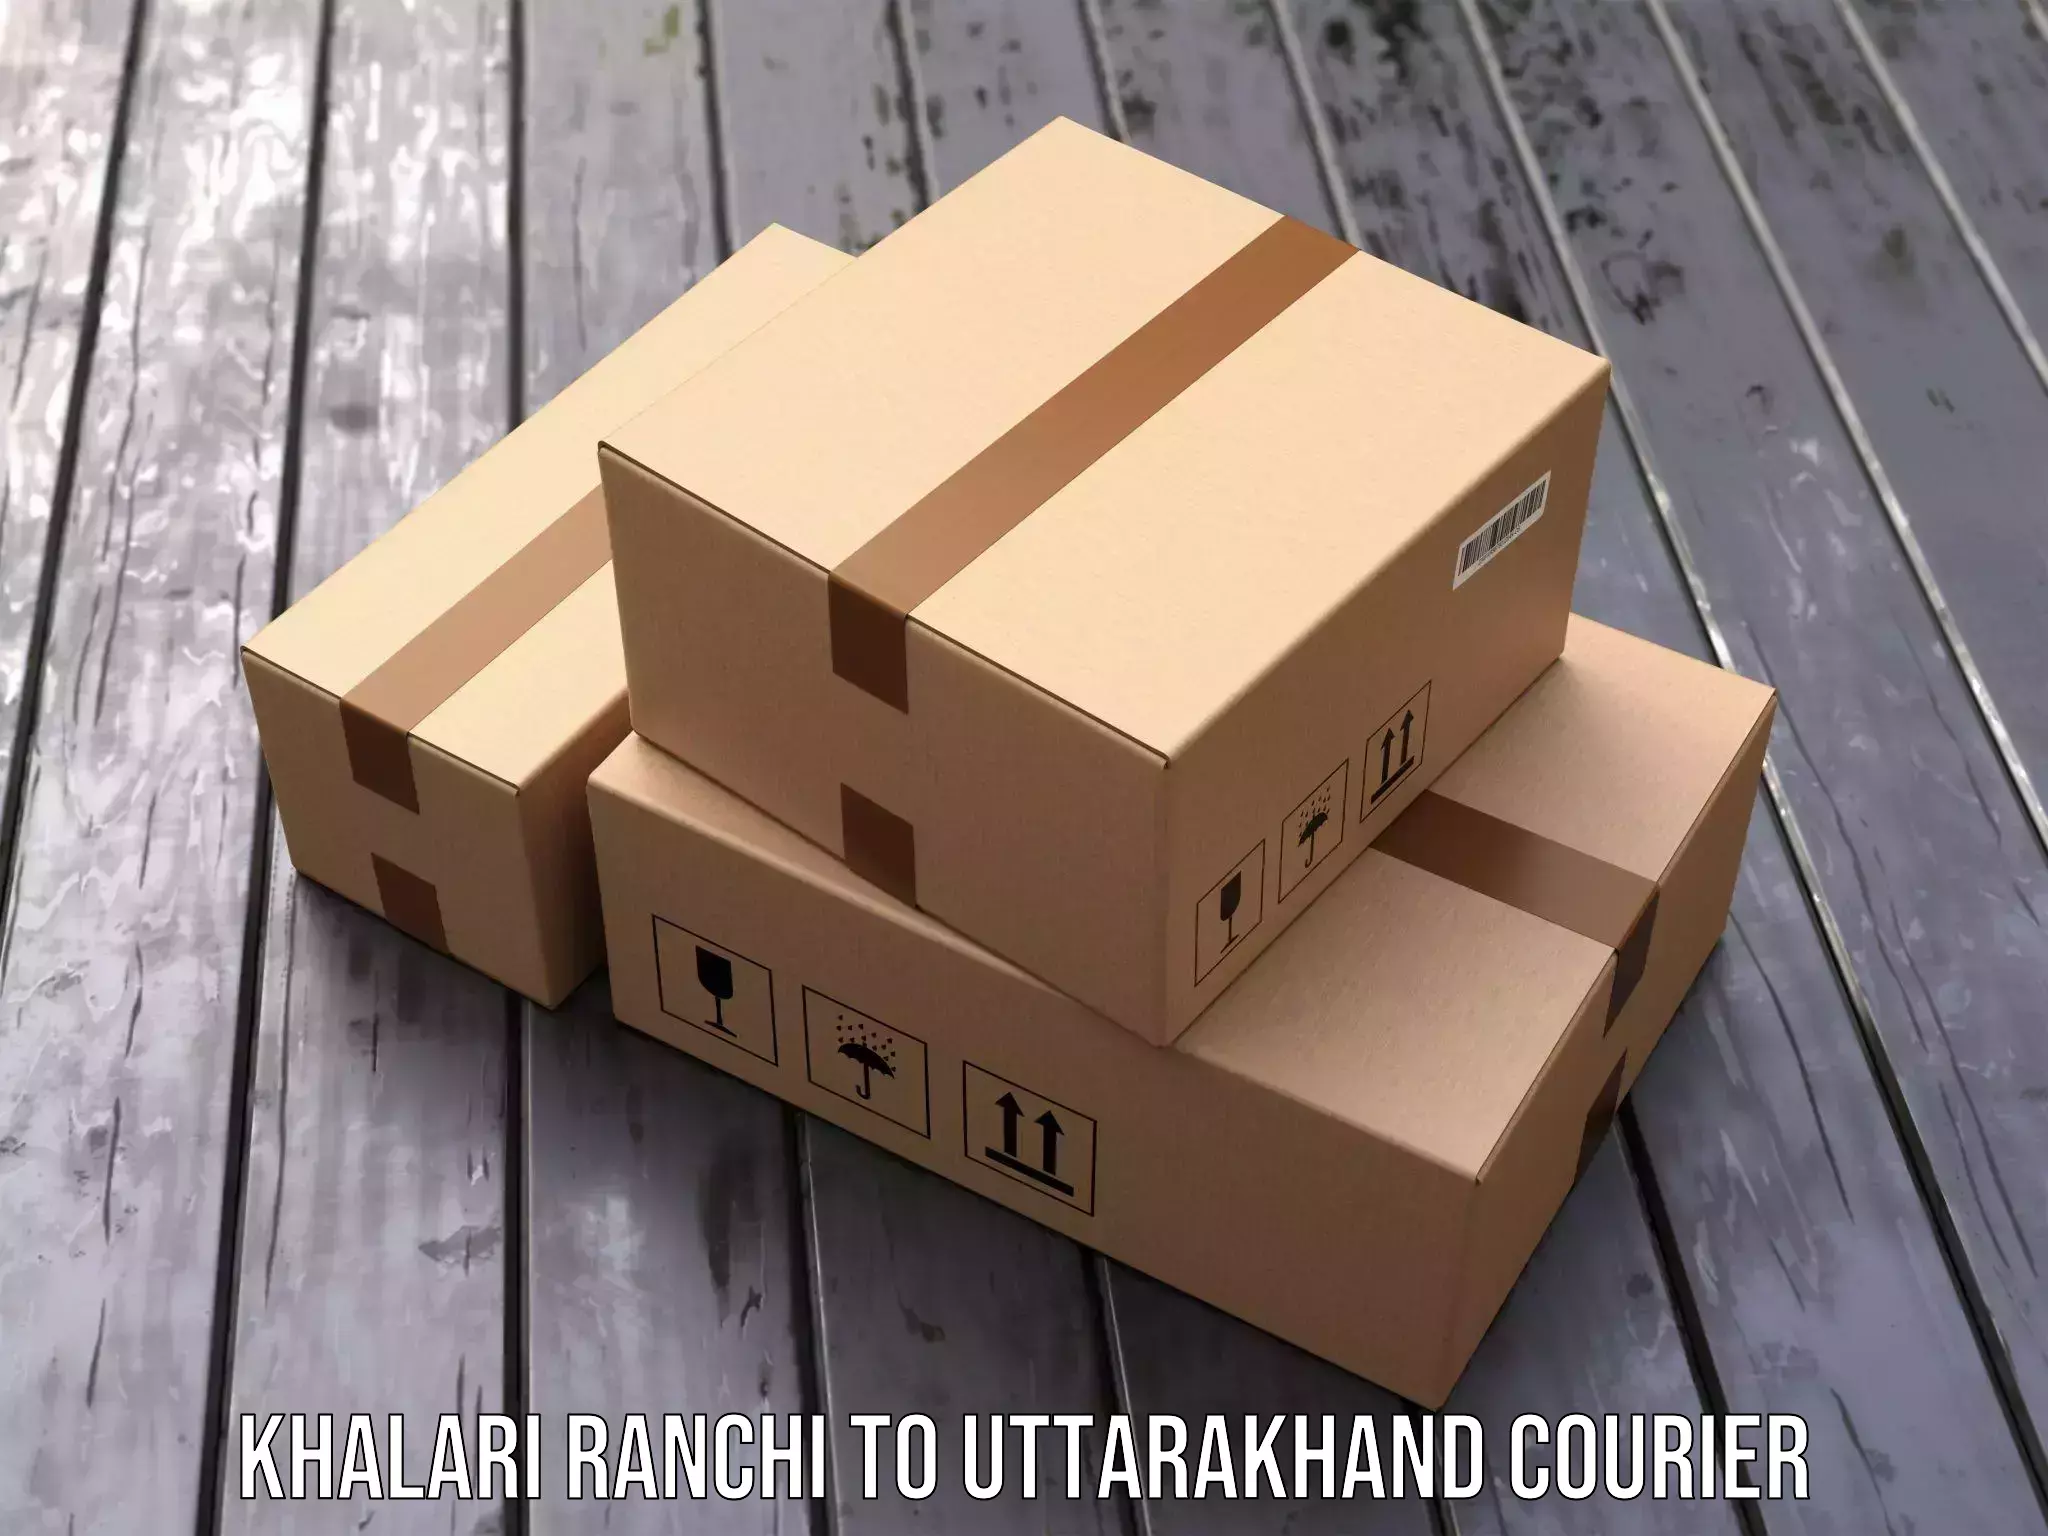 Nationwide shipping coverage Khalari Ranchi to Uttarakhand